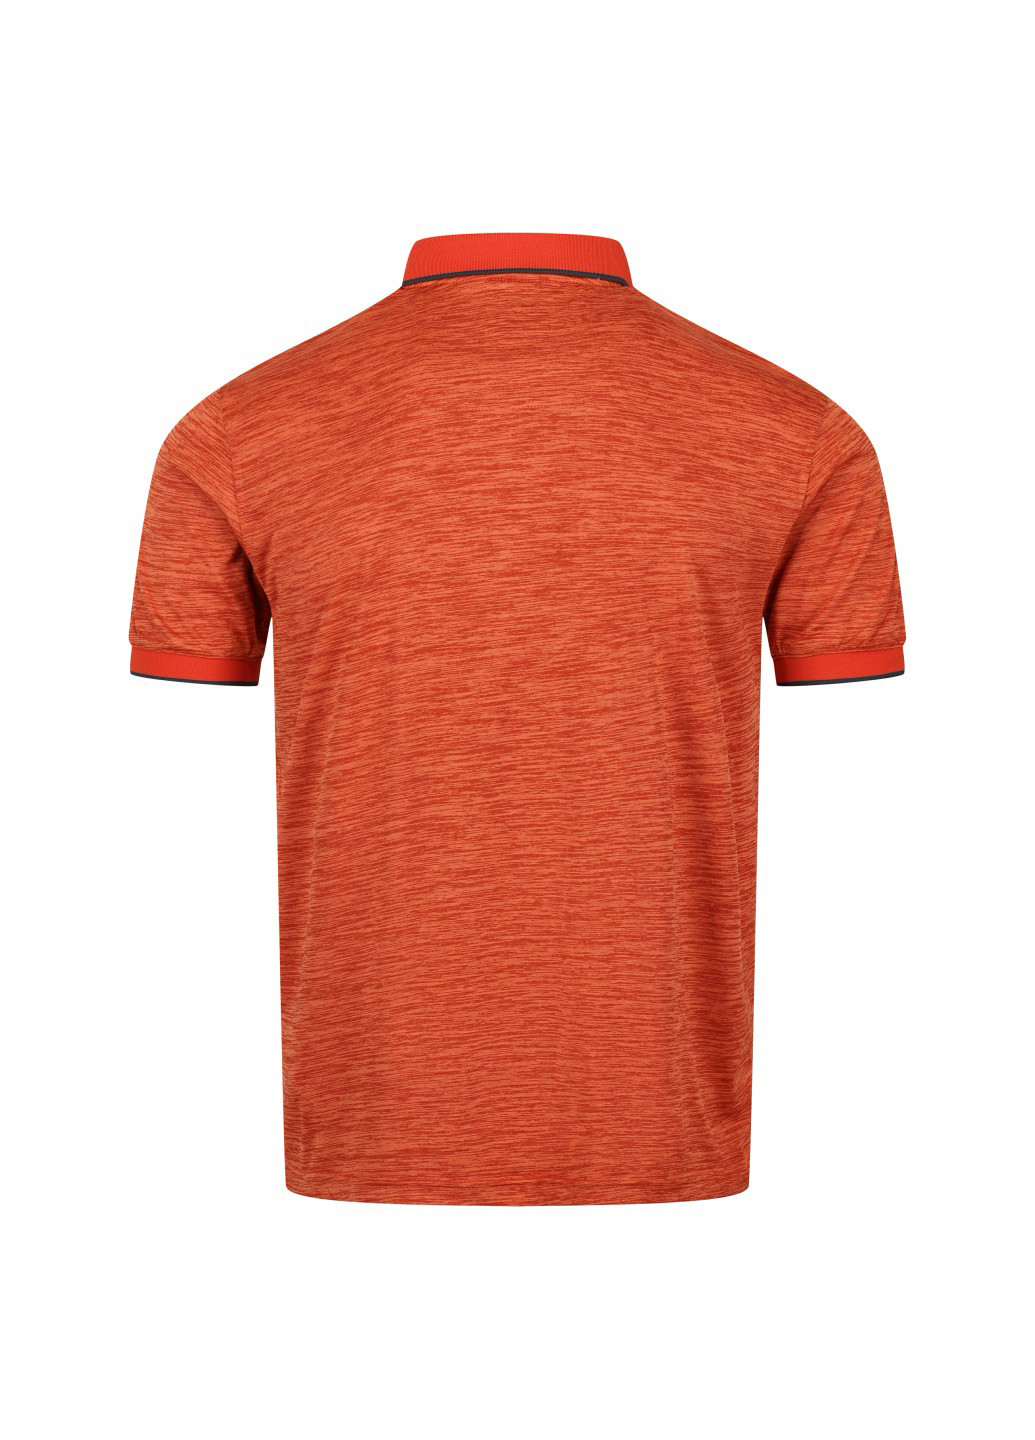 Терракотовая футболка-поло для мужчин Regatta меланжевая